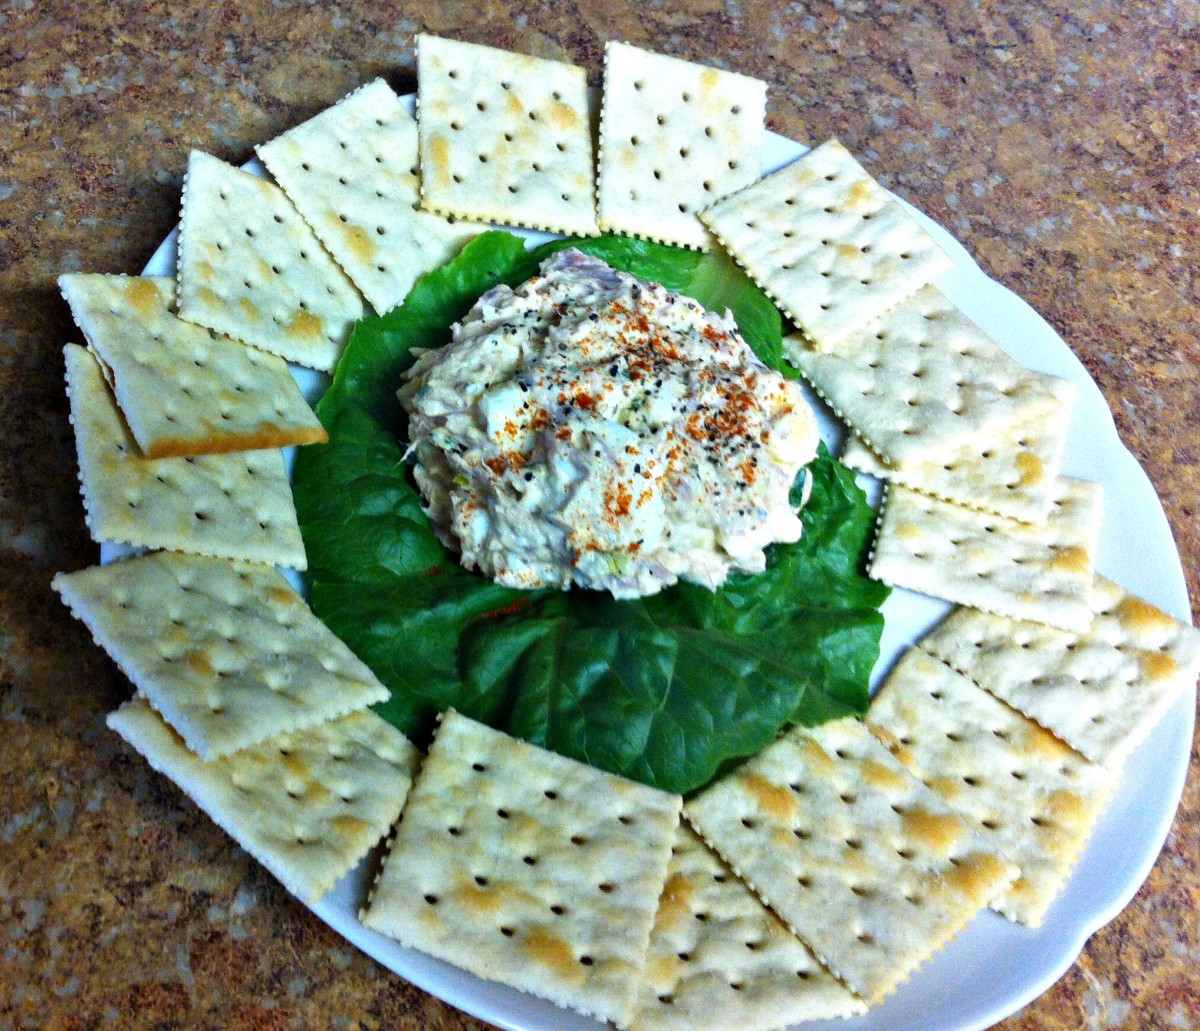 simple-delicious-chive-egg-tuna-salad-recipe